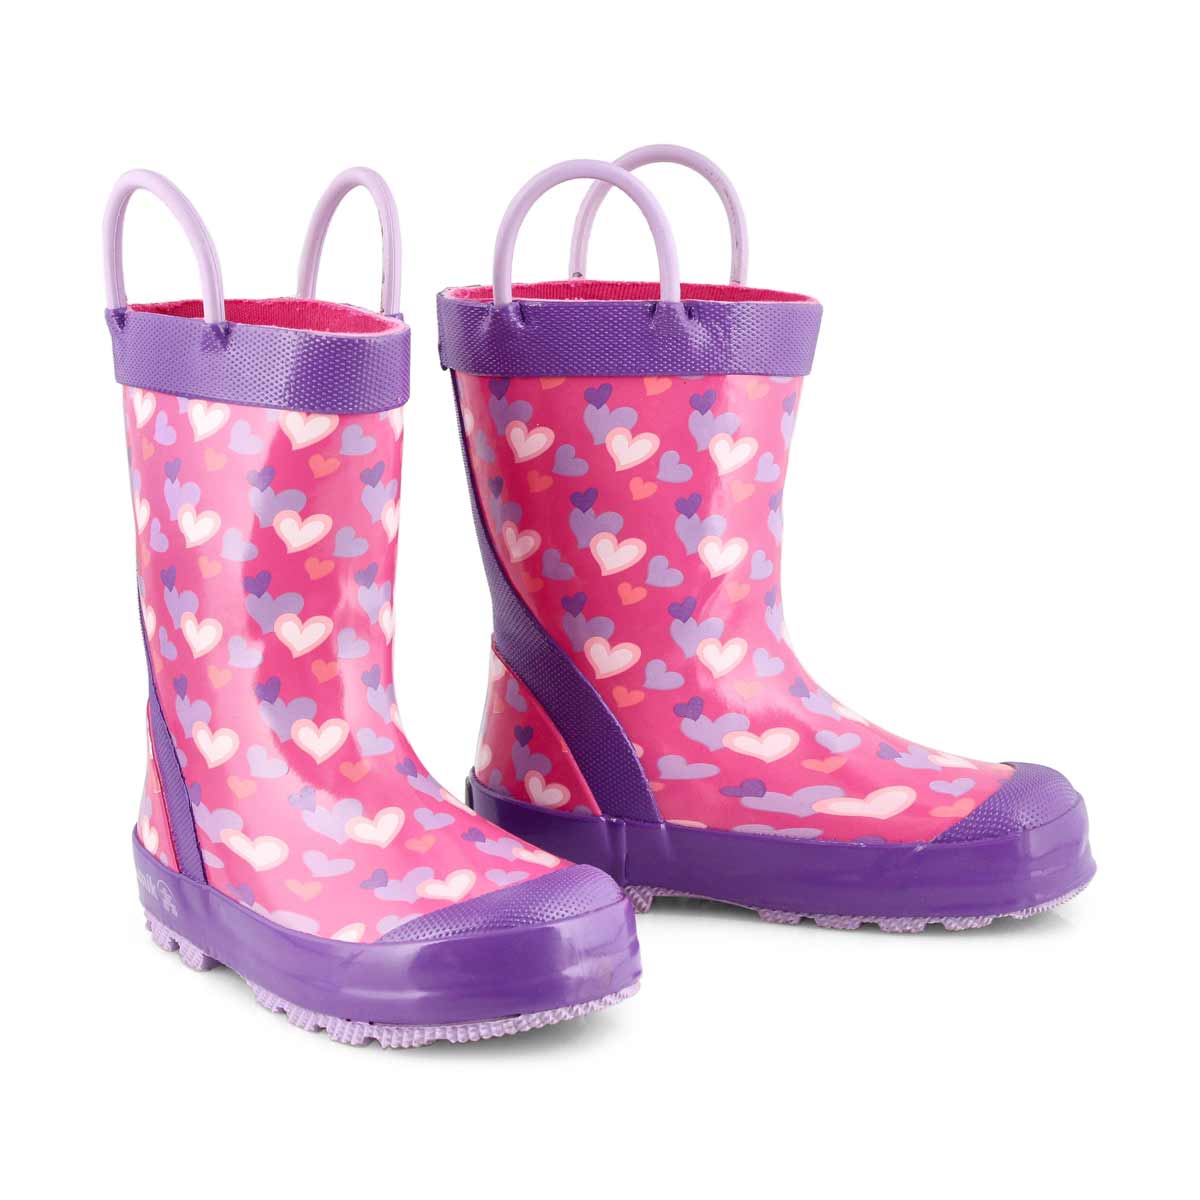 Girls' Lovely Rain boot - Pink